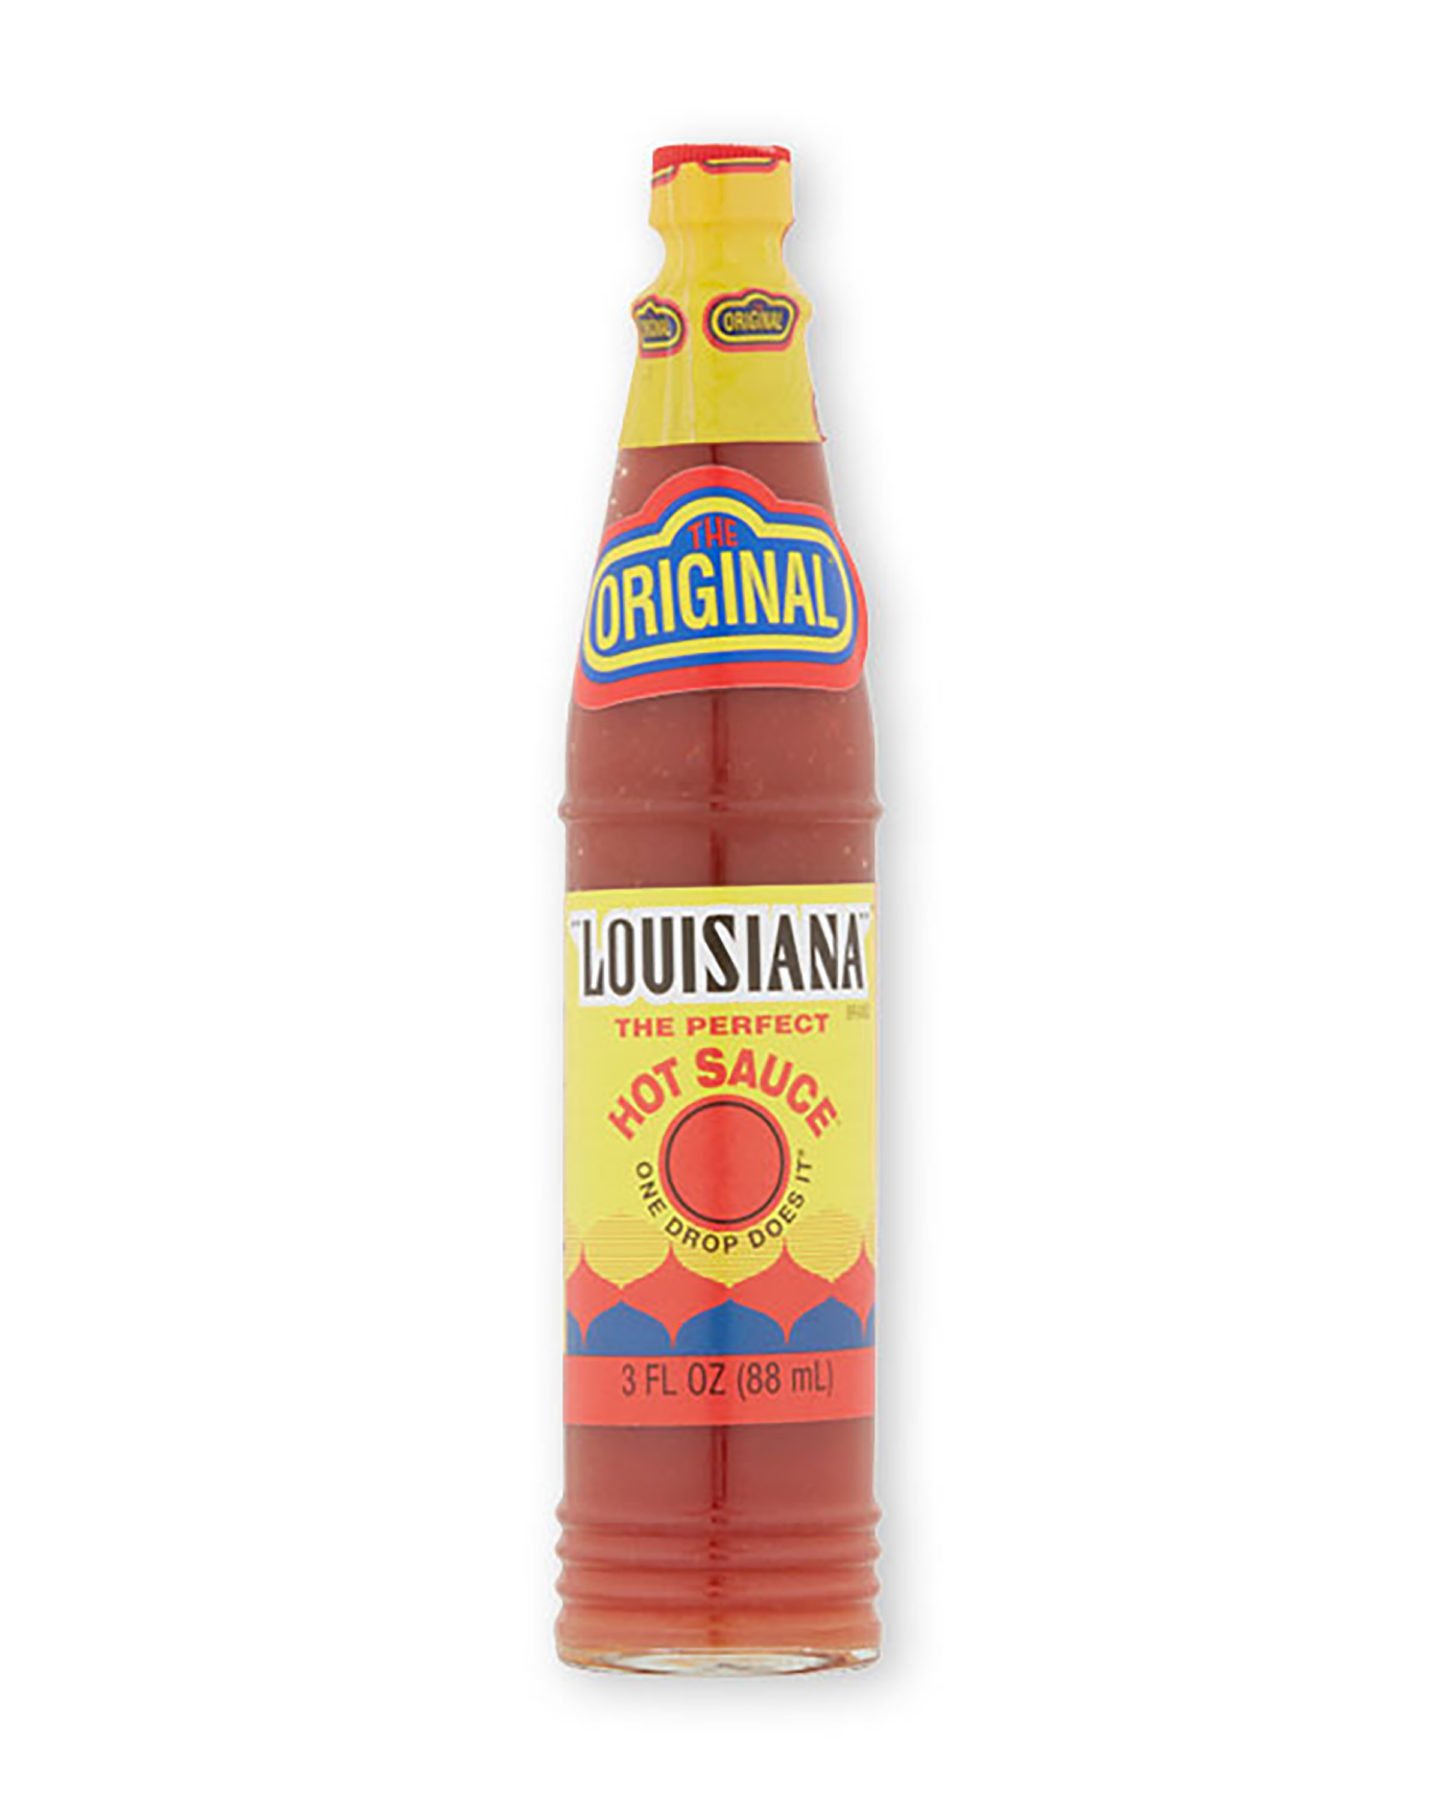 Louisiana hot sauce original Sriracha substitute